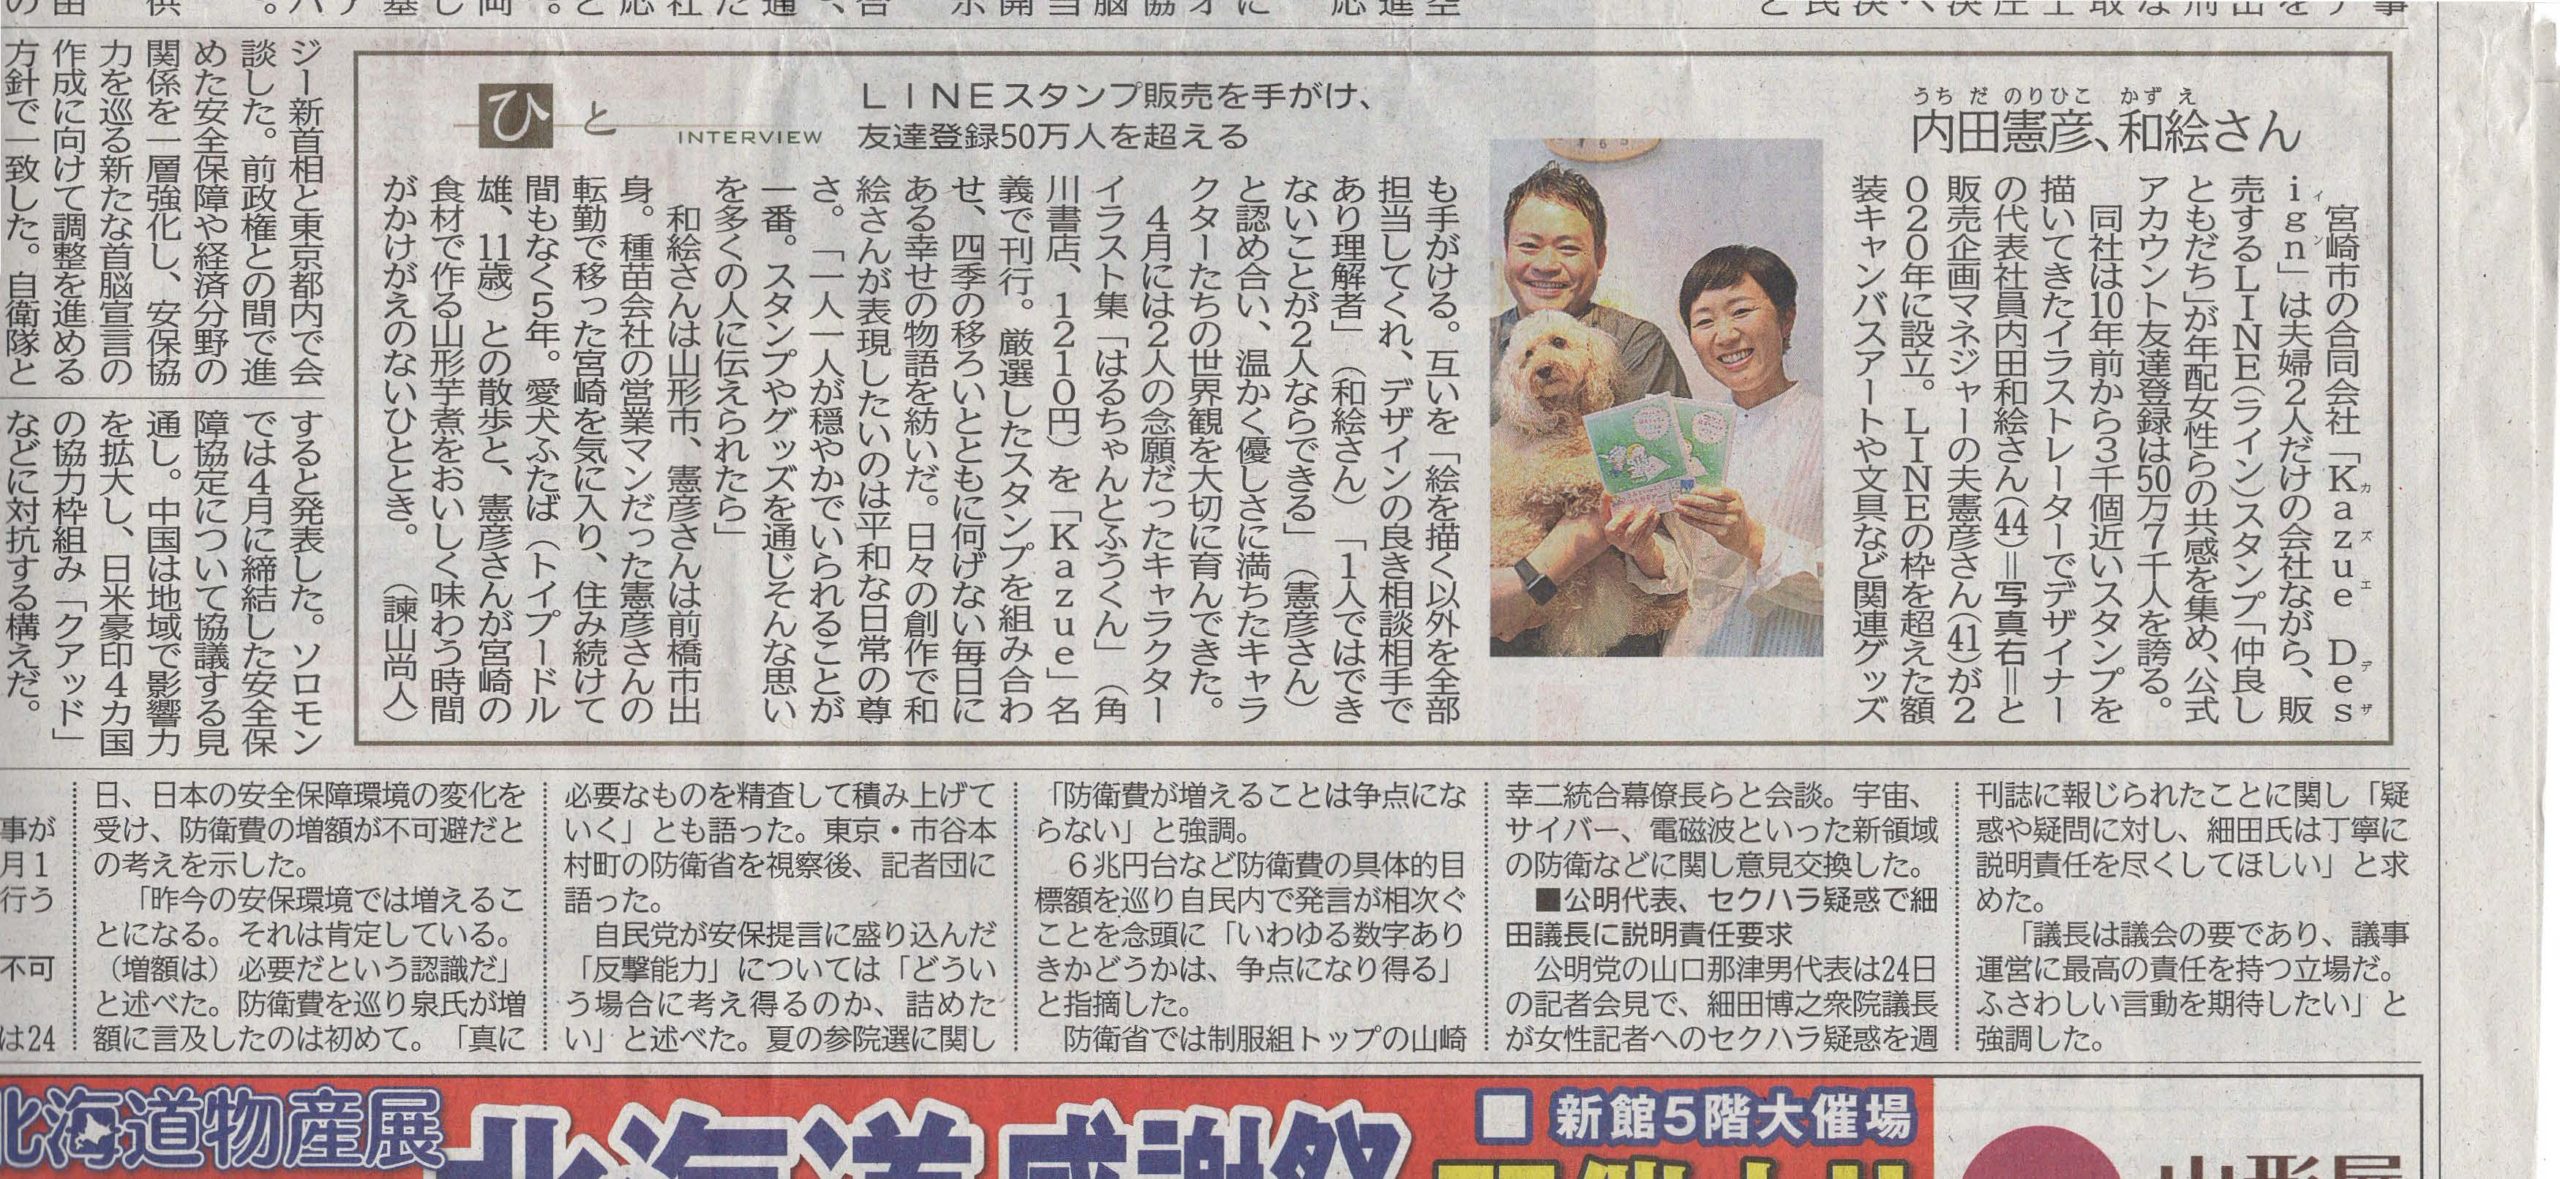 【メディア掲載】宮崎日日新聞にご取材いただきました。